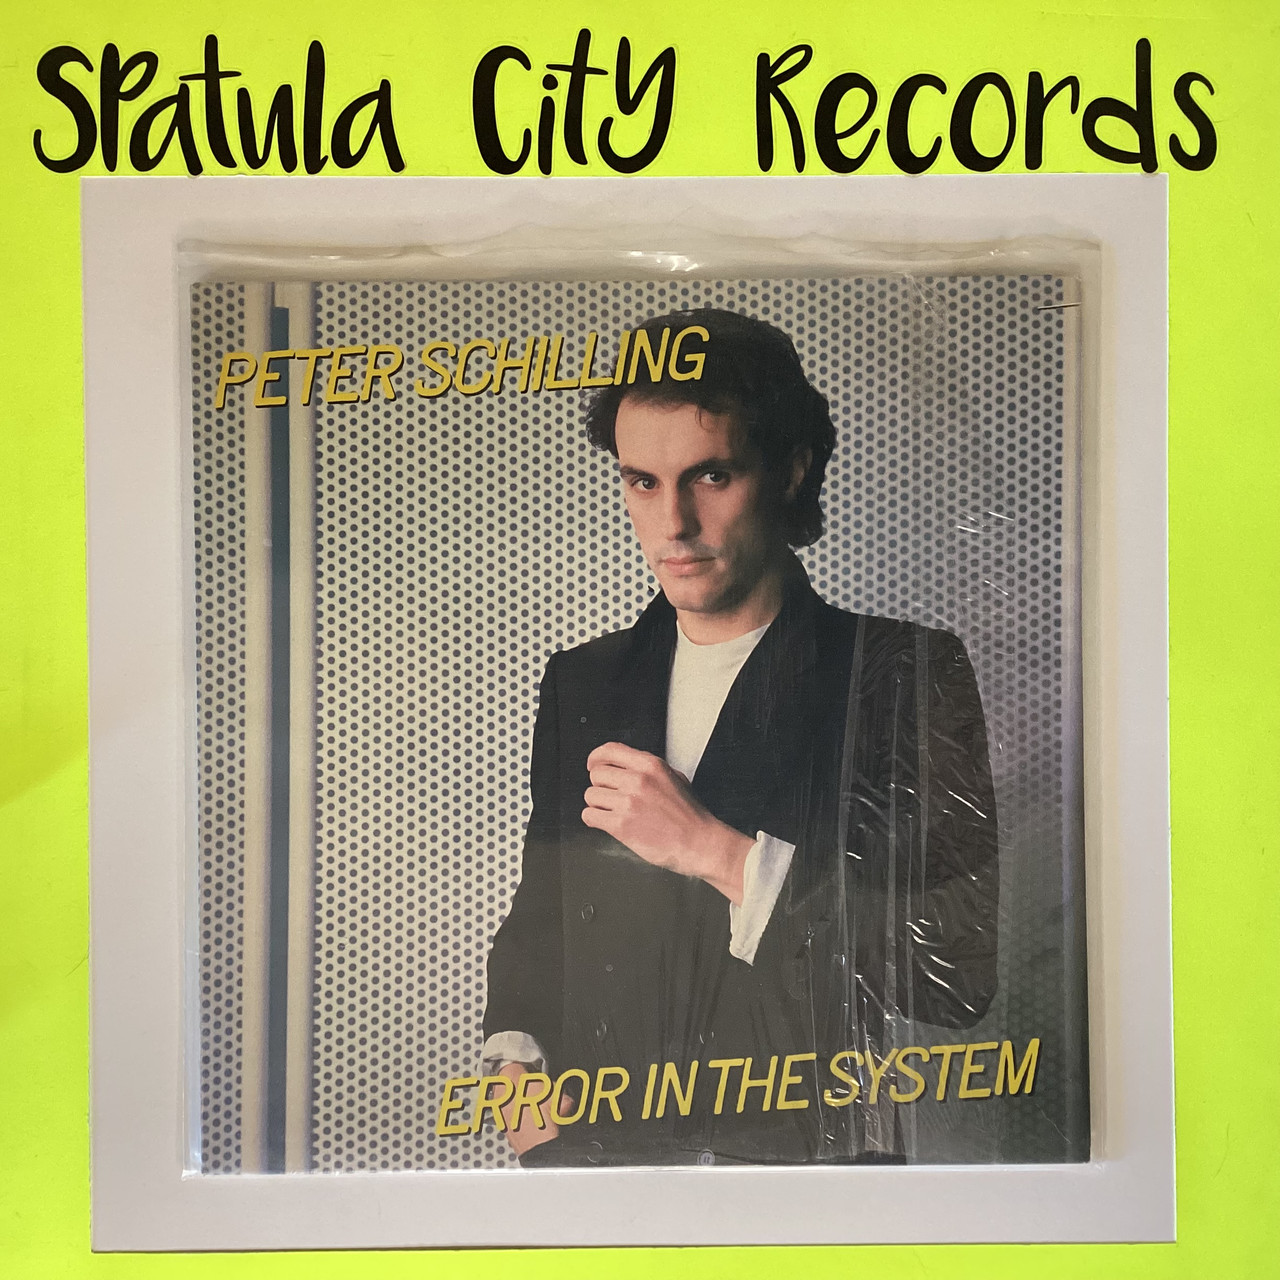 Peter Schilling - Error in The System - vinyl record album LP